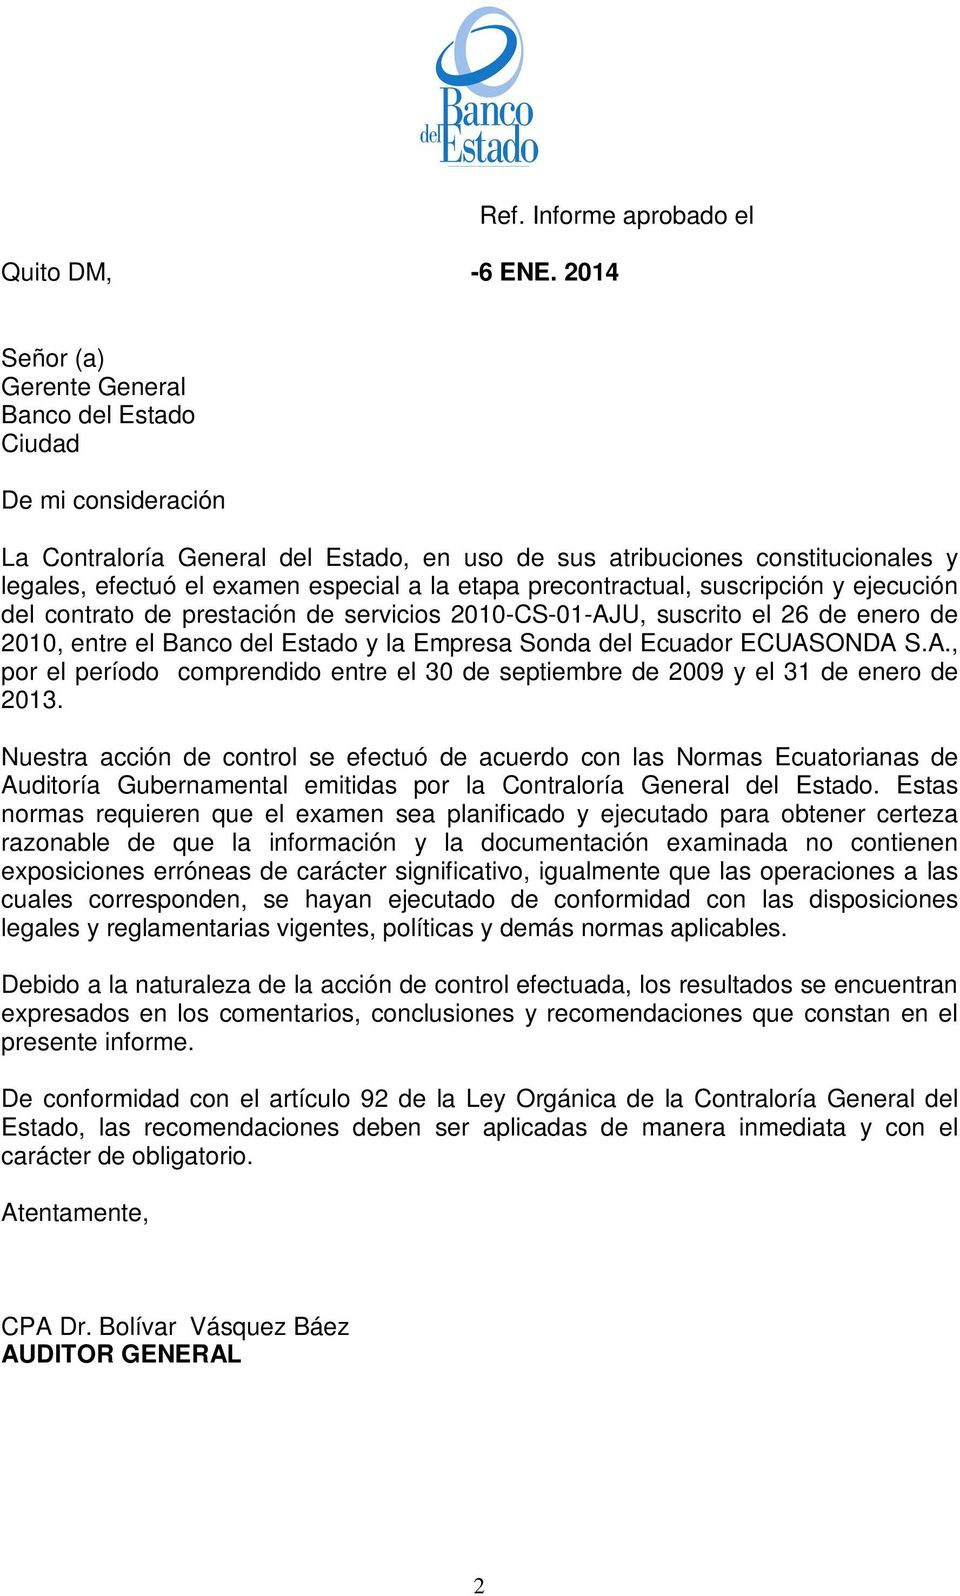 etapa precontractual, suscripción y ejecución del contrato de prestación de servicios 2010-CS-01-AJU, suscrito el 26 de enero de 2010, entre el Banco del Estado y la Empresa Sonda del Ecuador